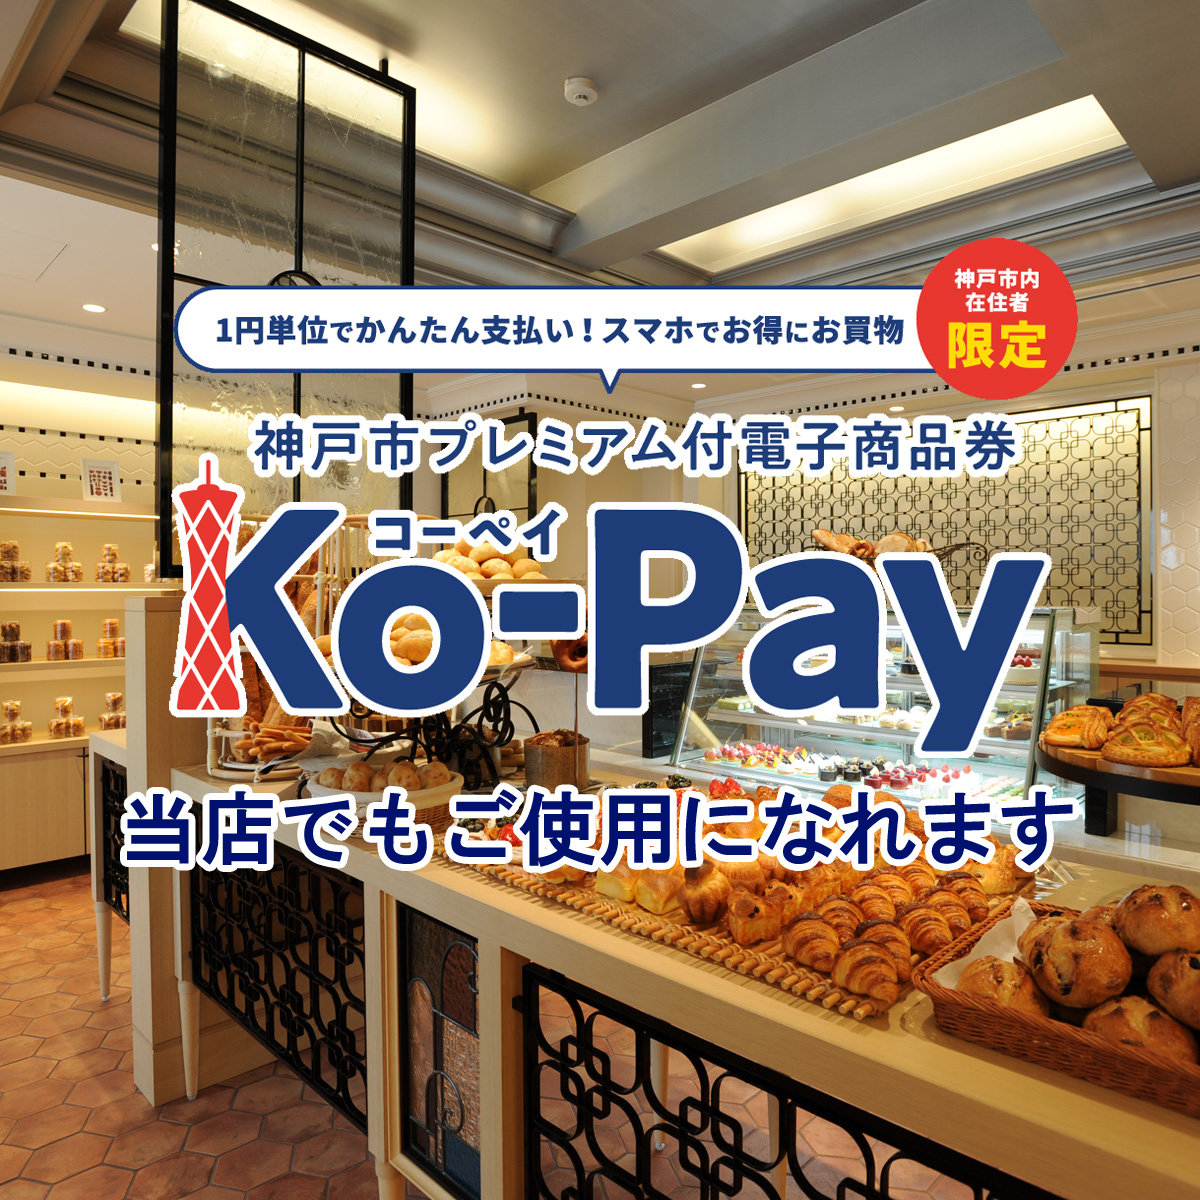 神戸市プレミアム付電子商品券「Ko-Pay」をル・パンでもご使用になれますメイン画像